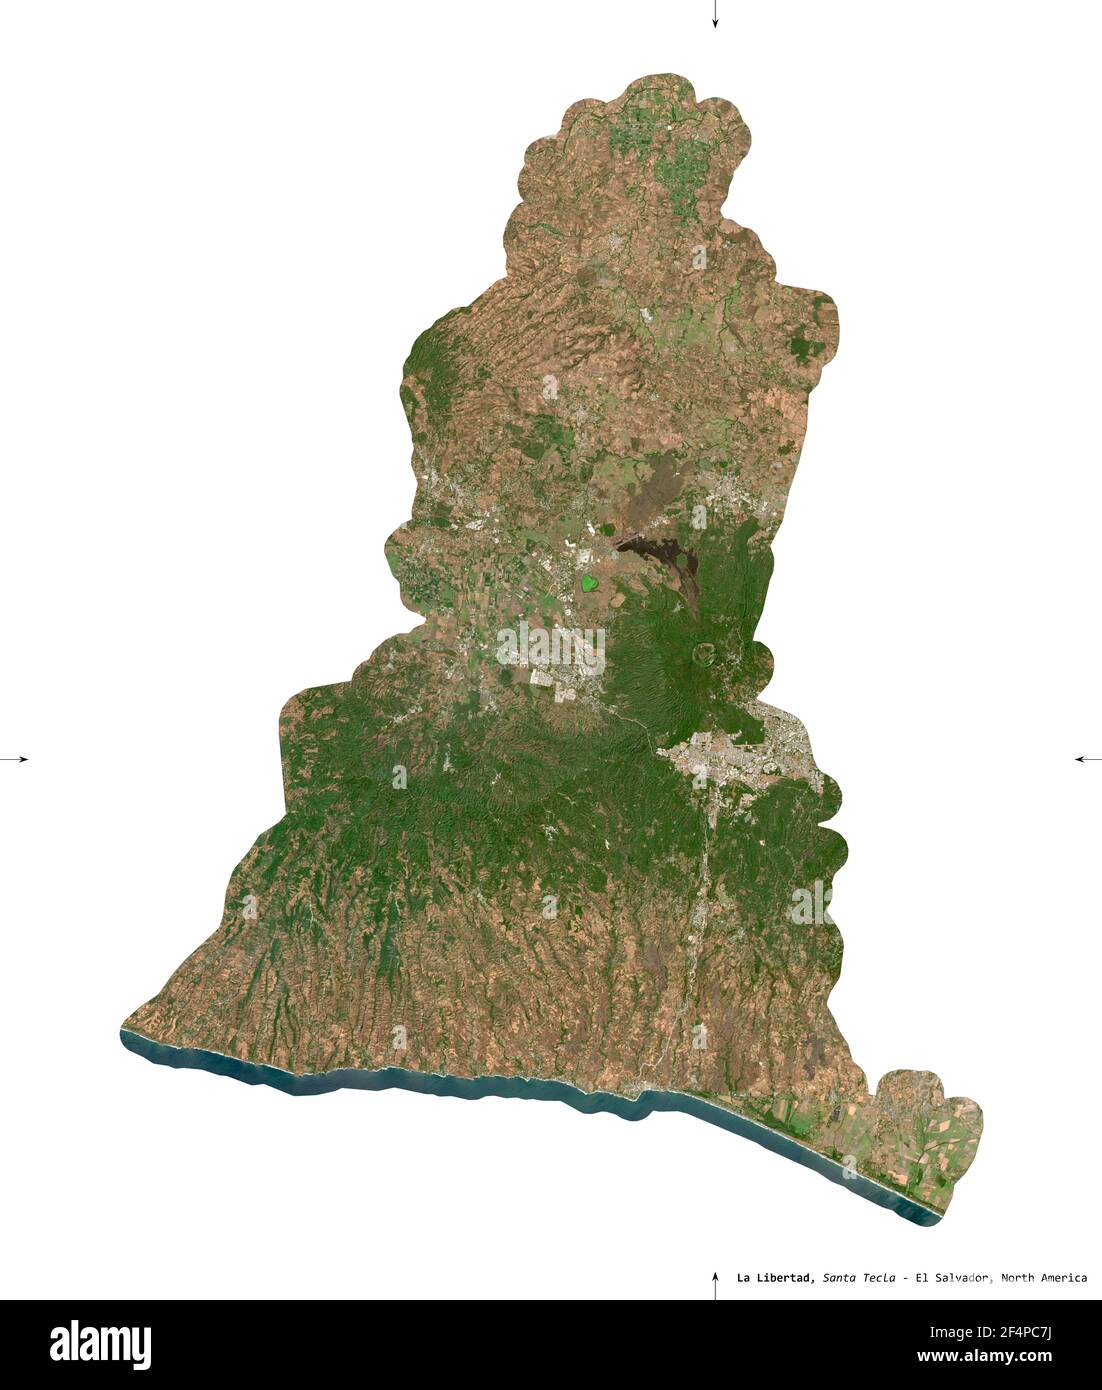 La Libertad, département d'El Salvador. Imagerie satellite Sentinel-2. Forme isolée sur solide blanc. Description, emplacement de la capitale. Contient Mo Banque D'Images